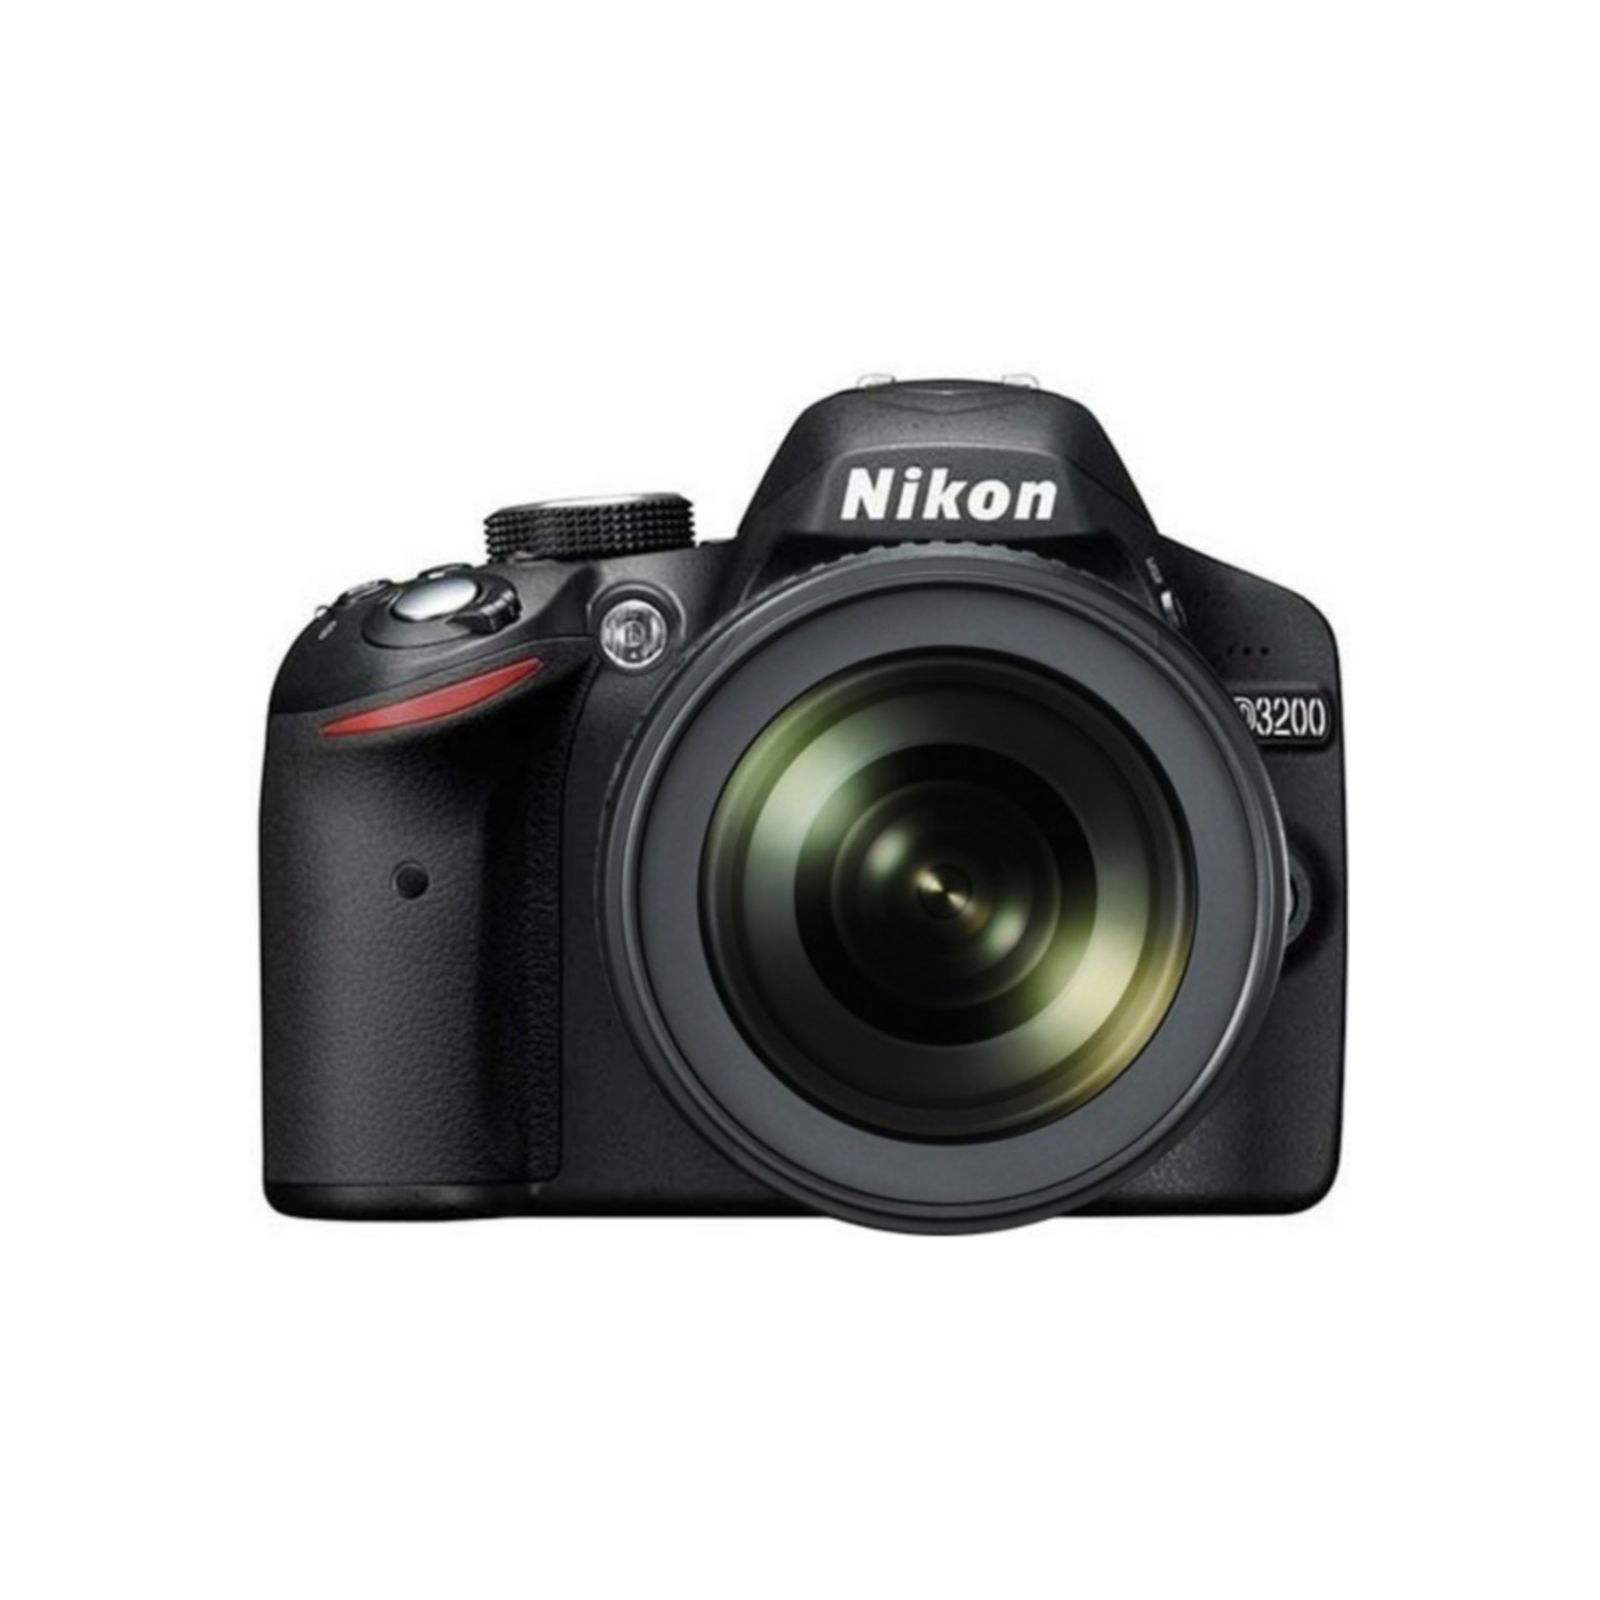 Nikon D3200 KIT WITH AF18-105VR Consumer DSLR fotoaparat VBA281K001 18-105 VR 18-105mm